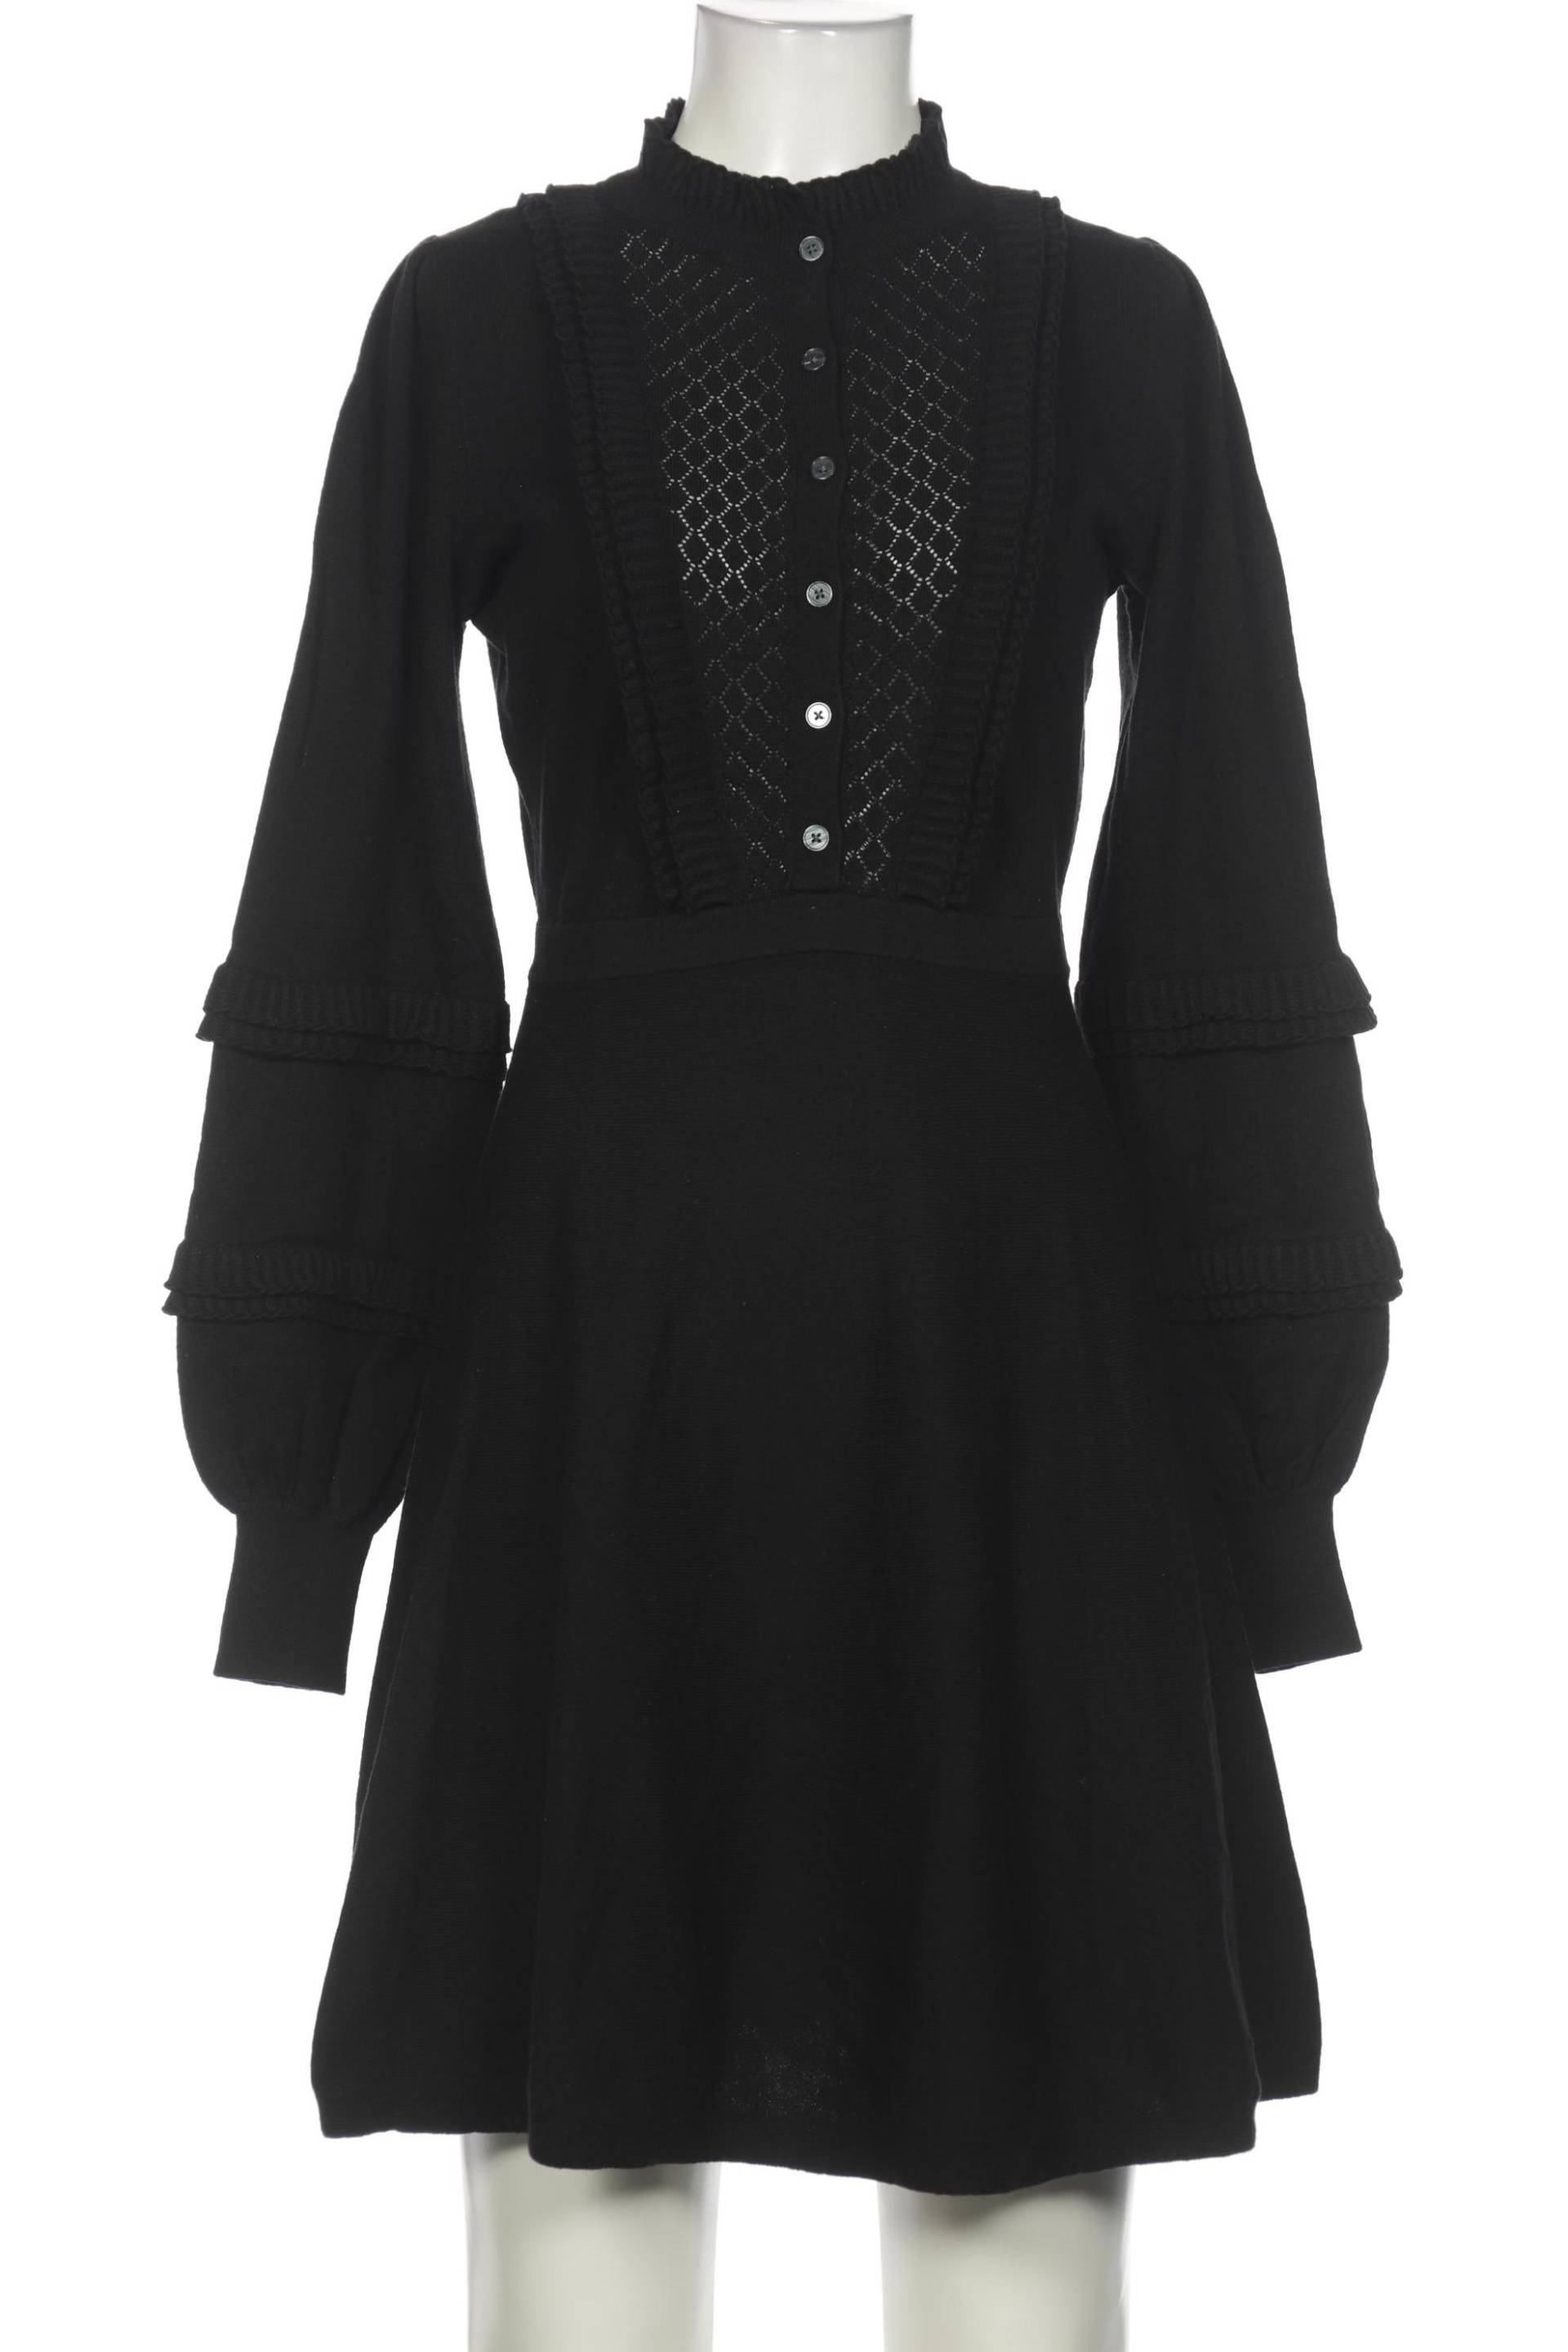 Boden Damen Kleid, schwarz, Gr. 36 von Boden